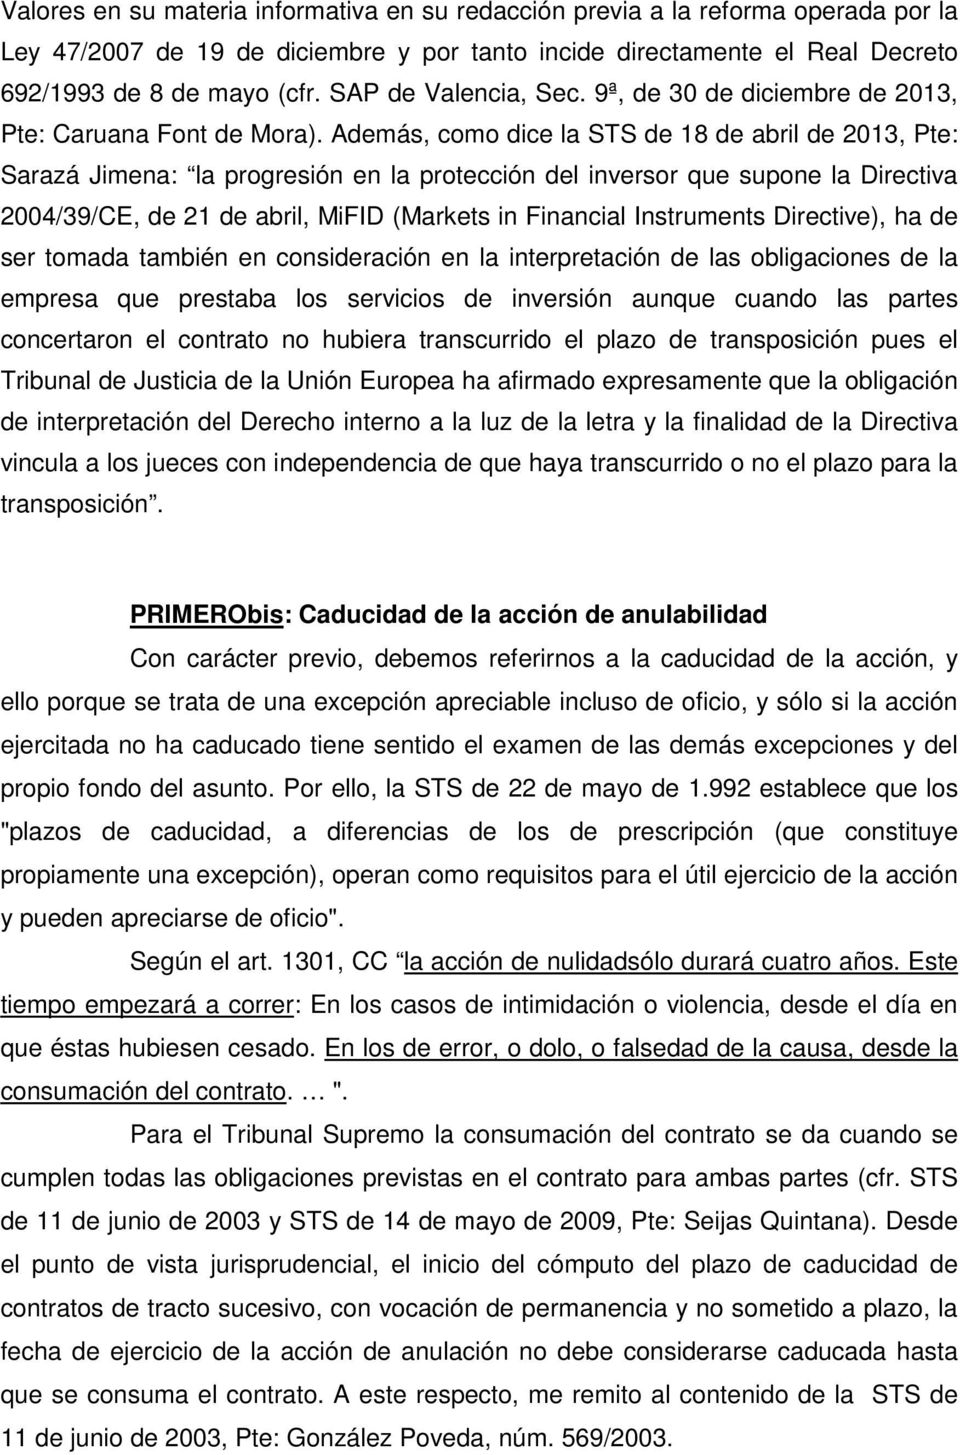 Además, como dice la STS de 18 de abril de 2013, Pte: Sarazá Jimena: la progresión en la protección del inversor que supone la Directiva 2004/39/CE, de 21 de abril, MiFID (Markets in Financial